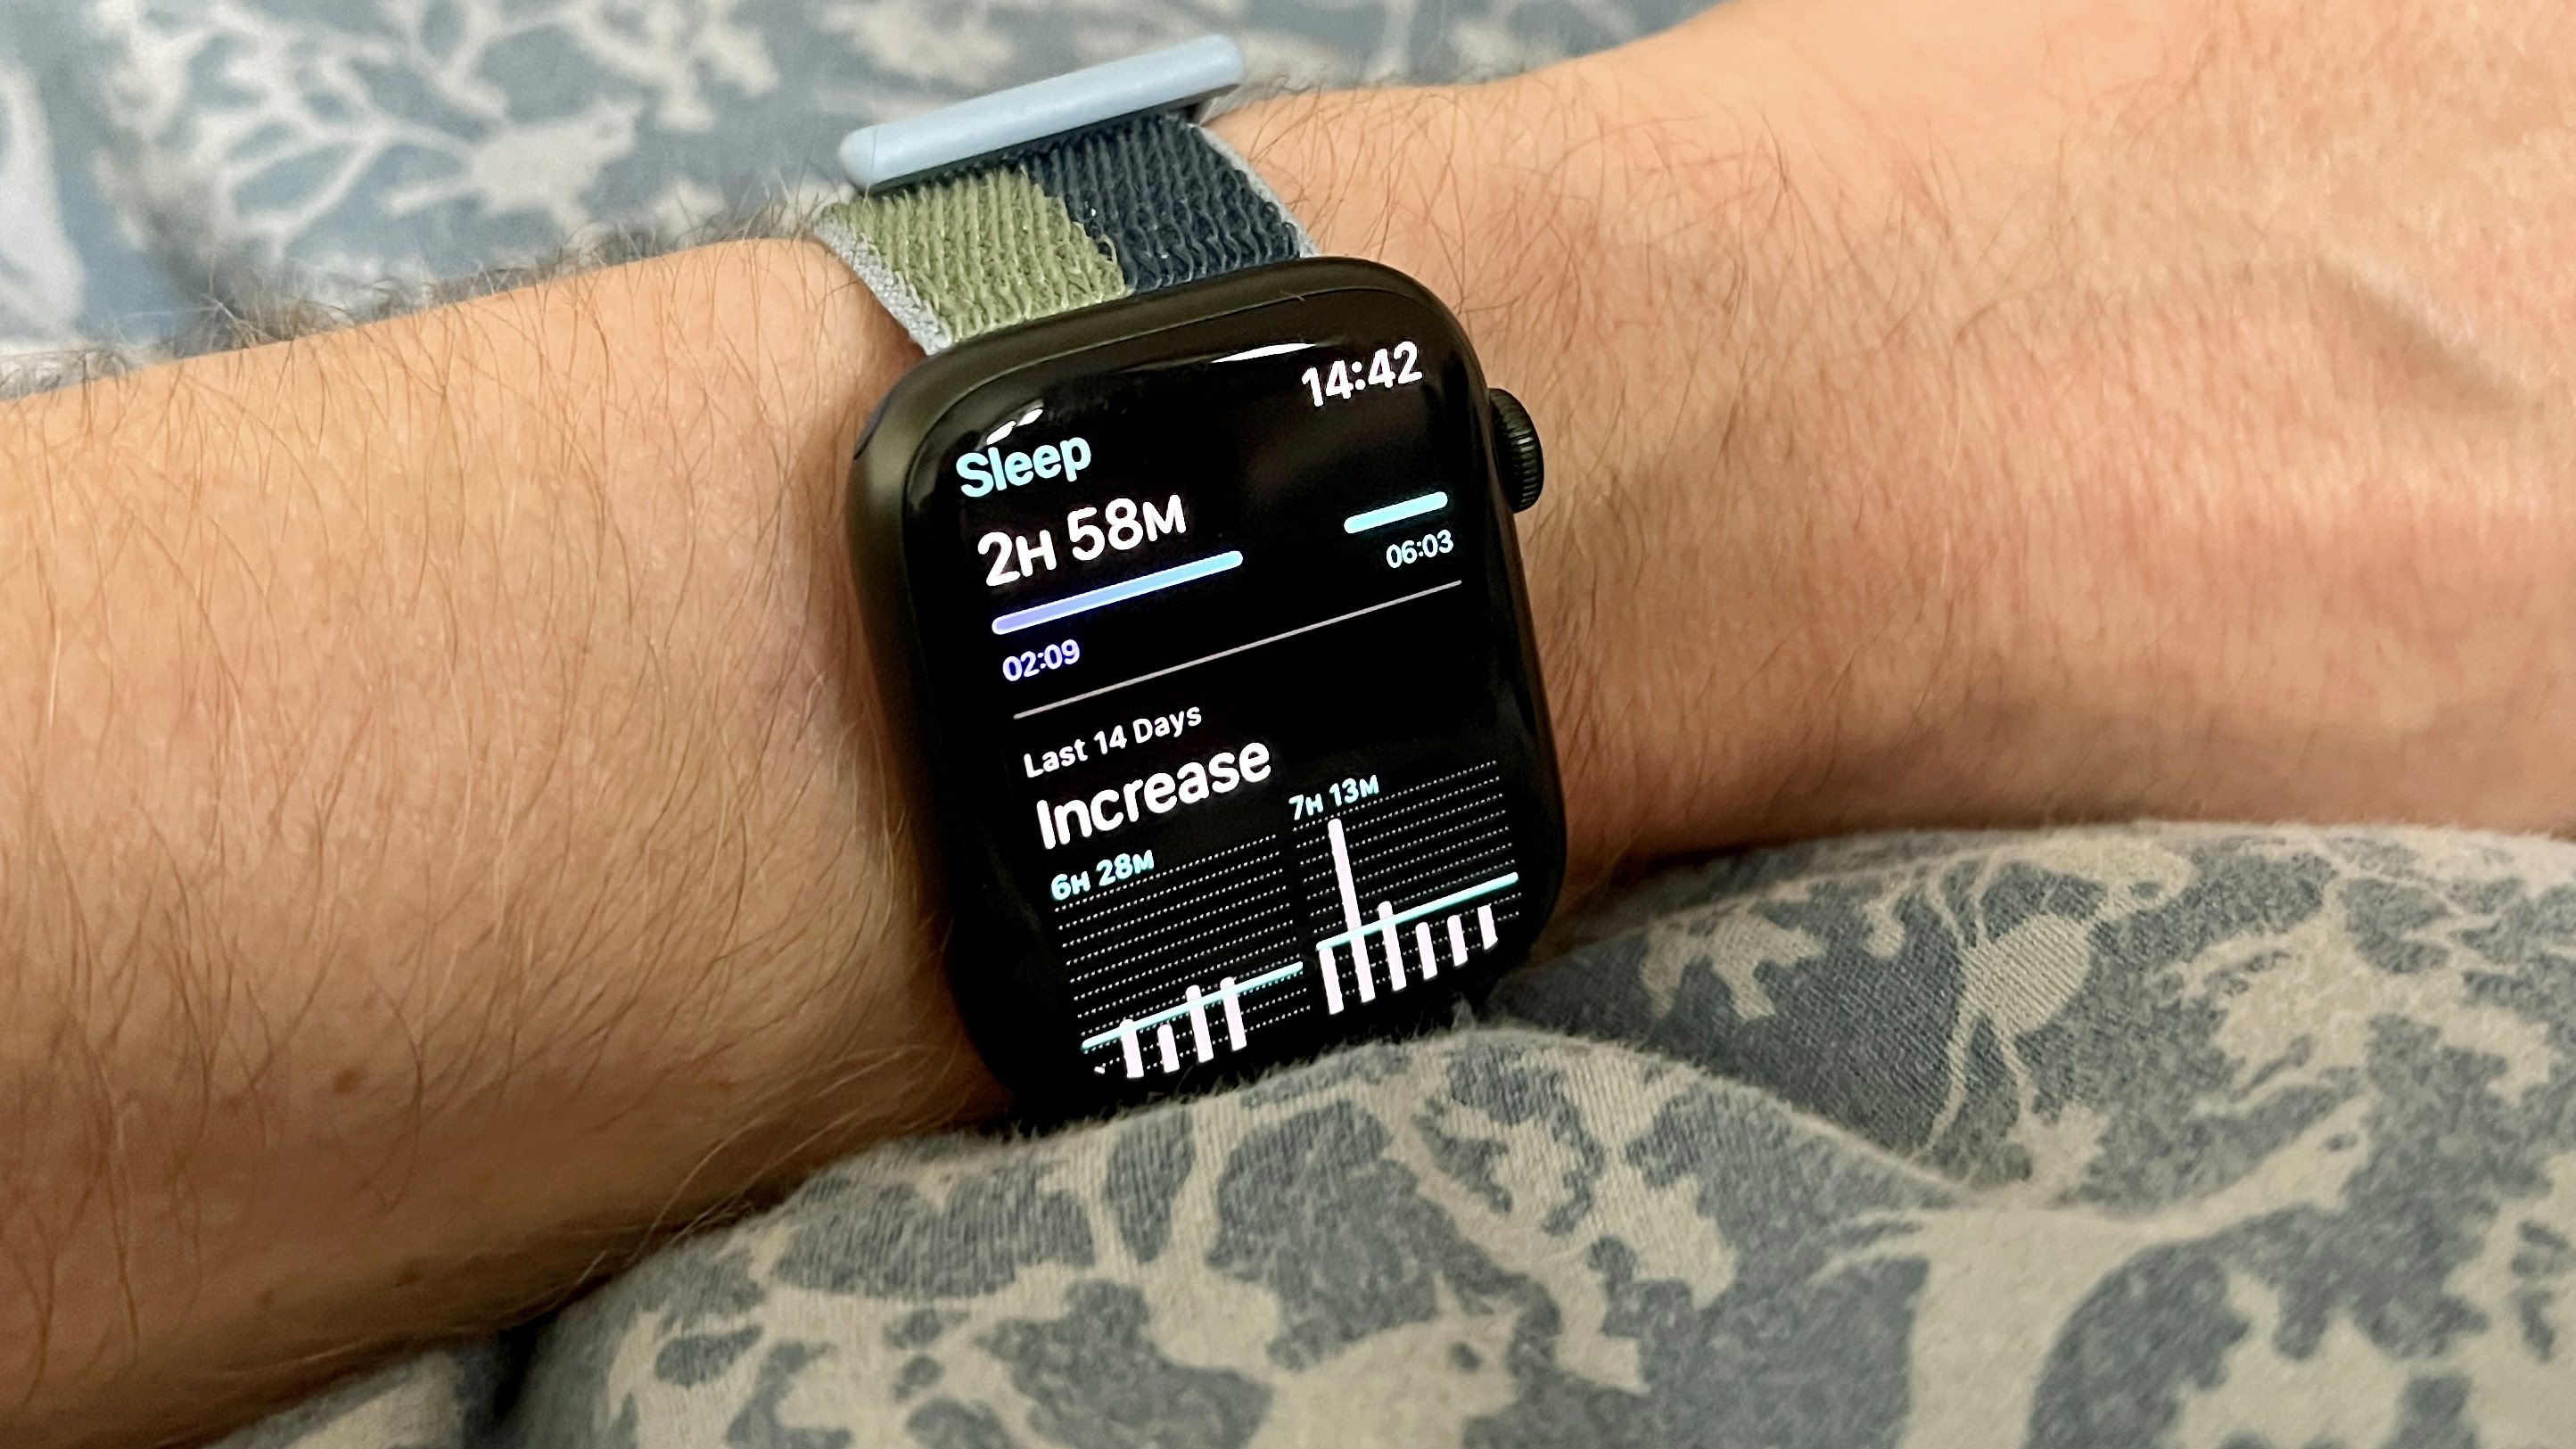 Apple Watch Series 7 sleep tracking